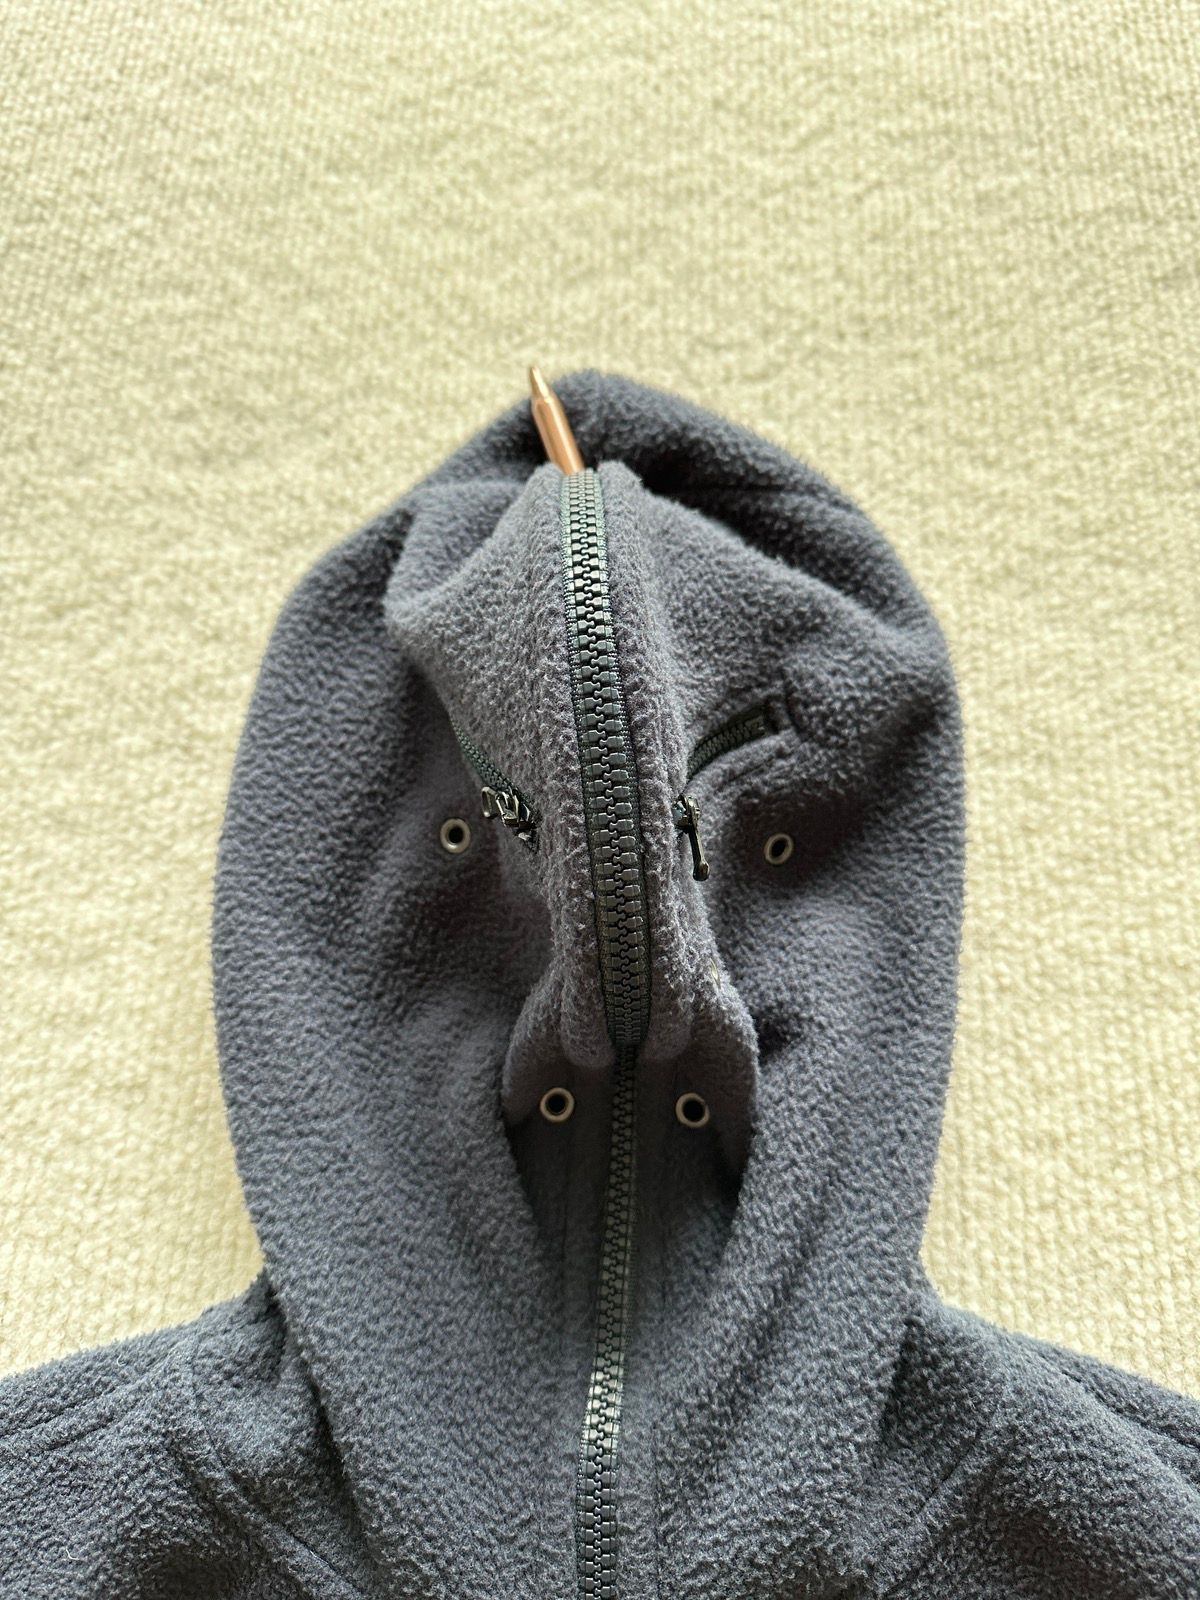 Vetements Vetements 19ss Gimp Mask Fleece Hoodie Navy Travis Scott Size US XL / EU 56 / 4 - 7 Thumbnail